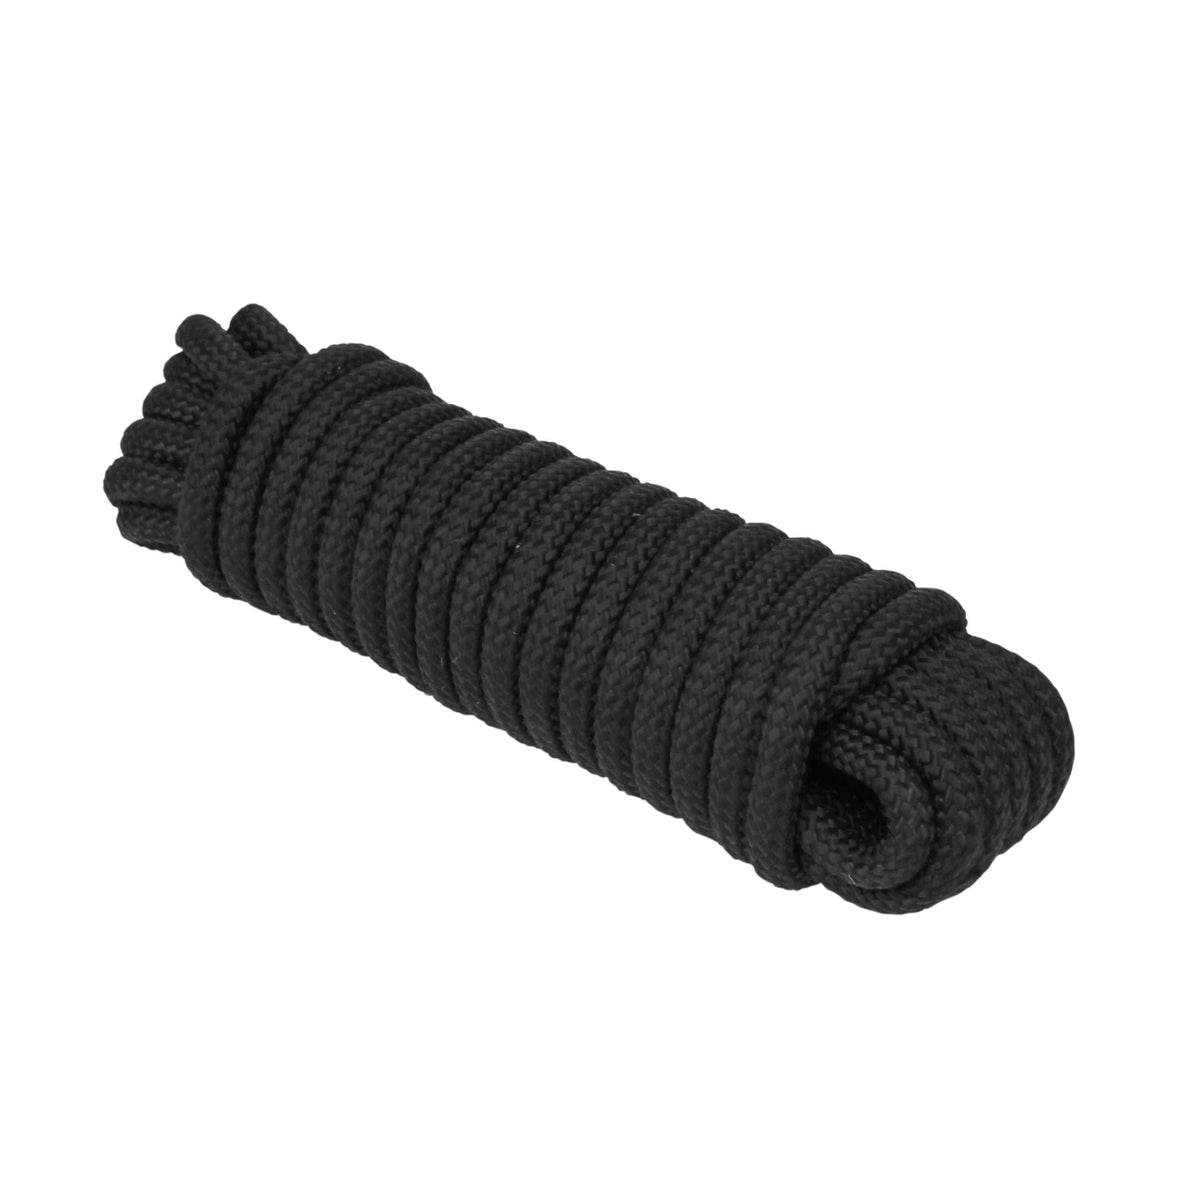 Extreme Max Diamond Braid Utility Rope 1/2" 25' Black #3008.0319